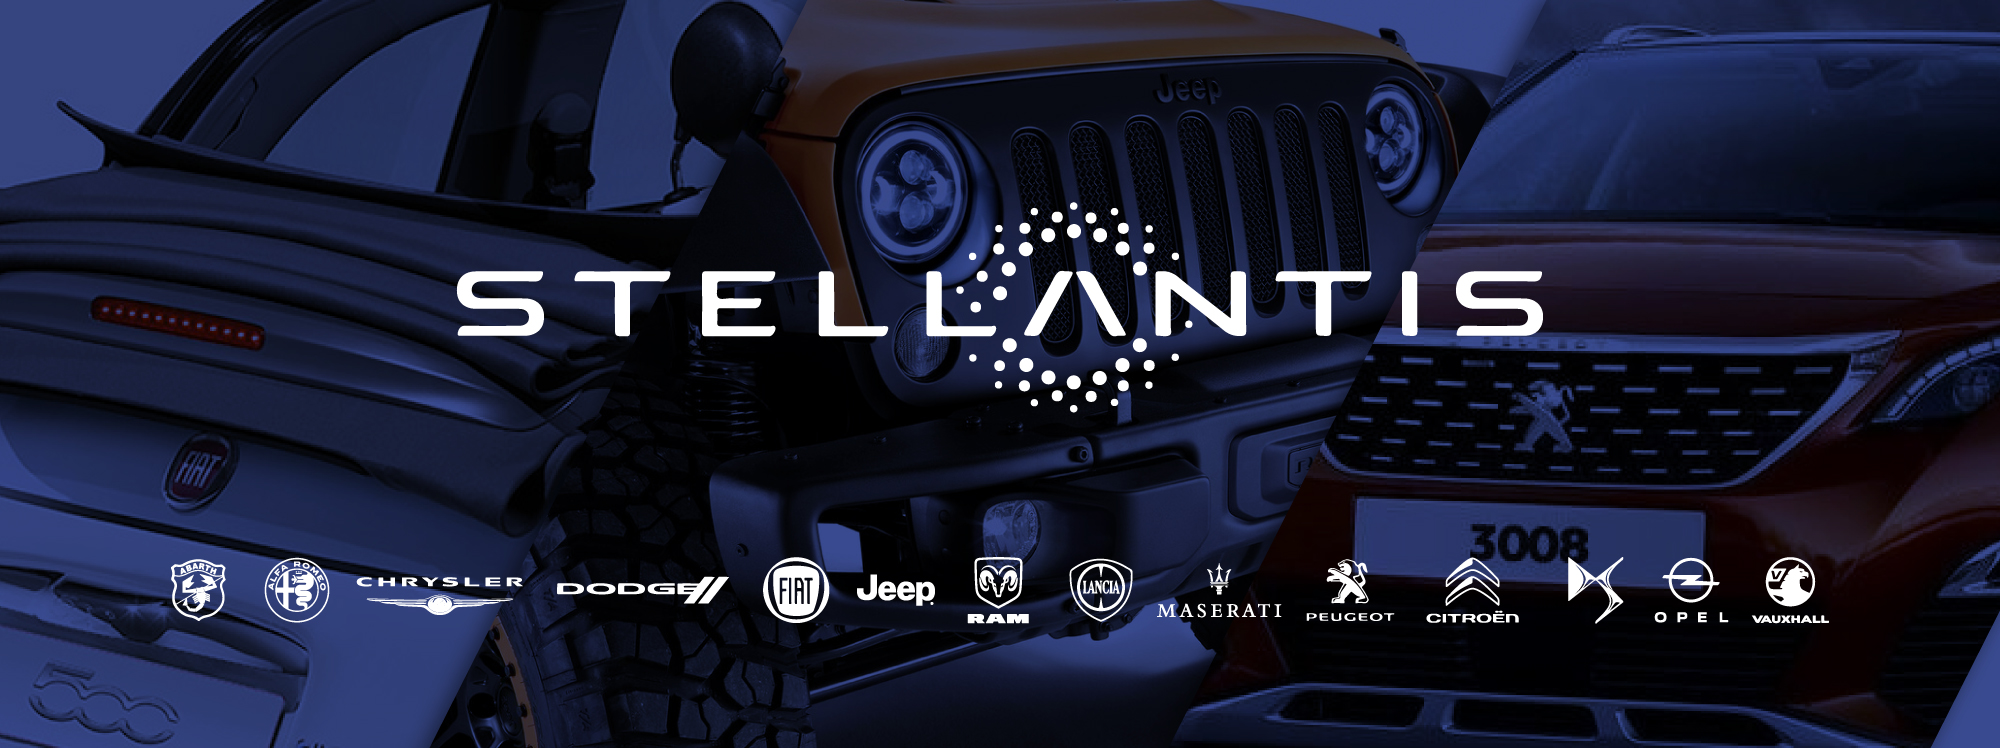 Stellantis: Fiat, Jeep, Peugeot, y muchos más en una nueva fusión de fabricantes de autos